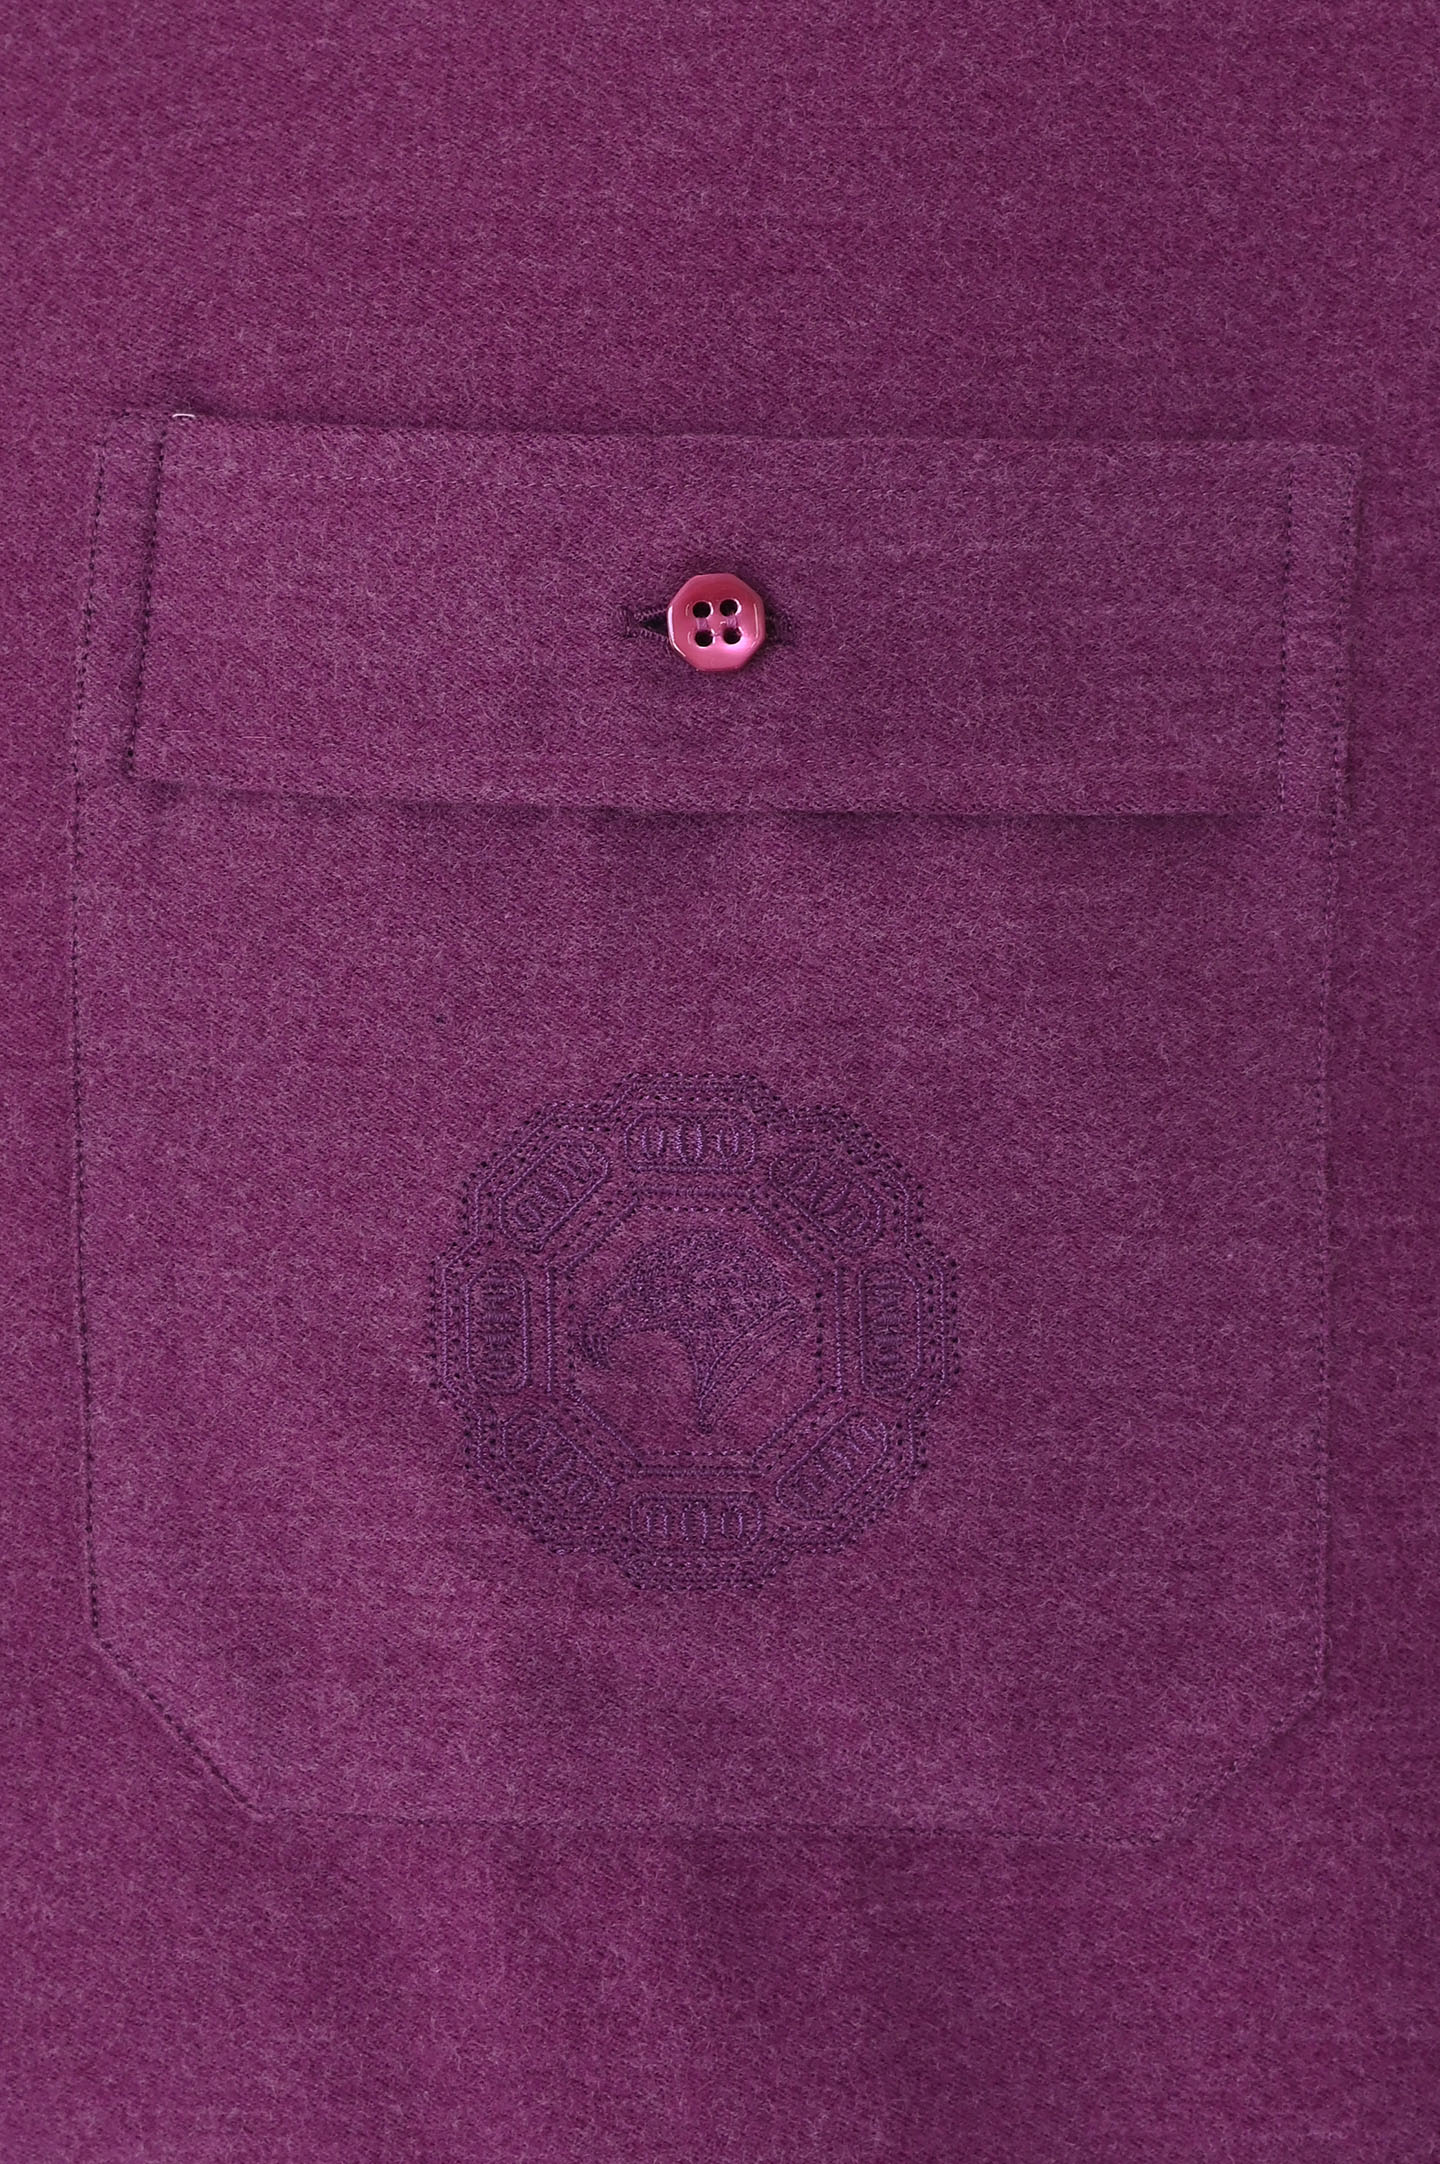 Рубашка STEFANO RICCI MC007041 R2654, цвет: Фиолетовый, Мужской